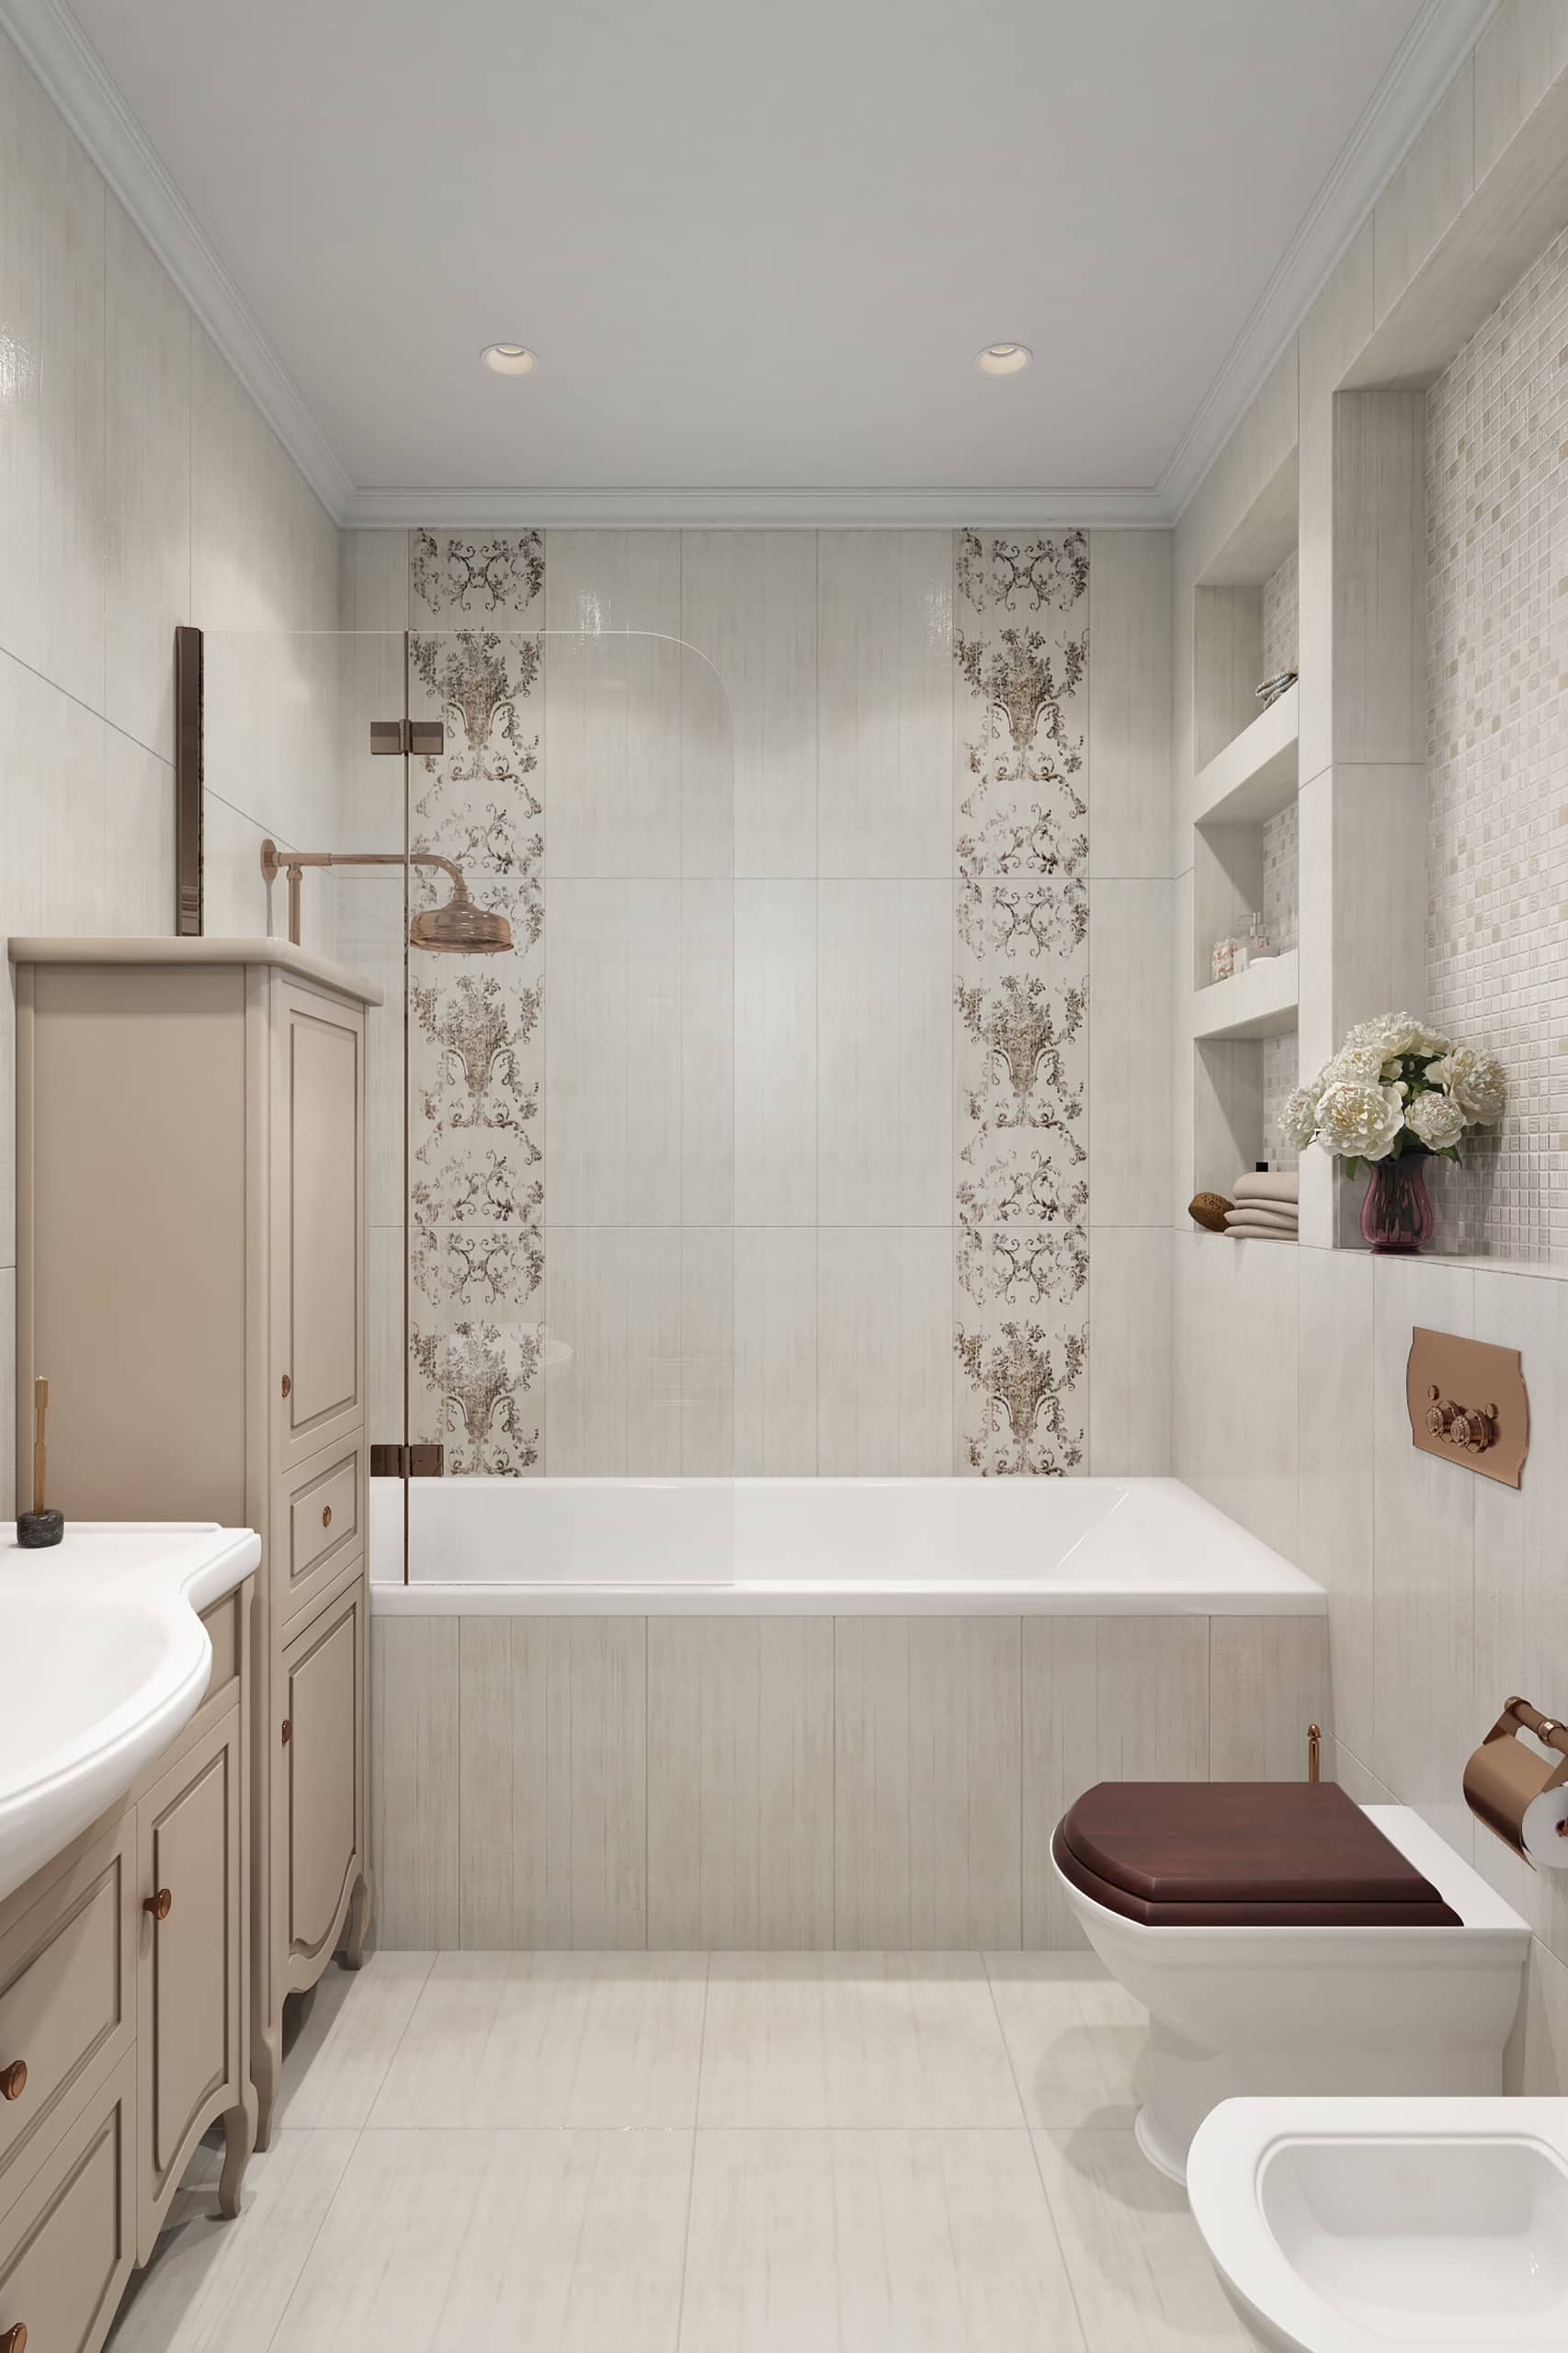 Кремовая плитка в ванной с классическим орнаментом